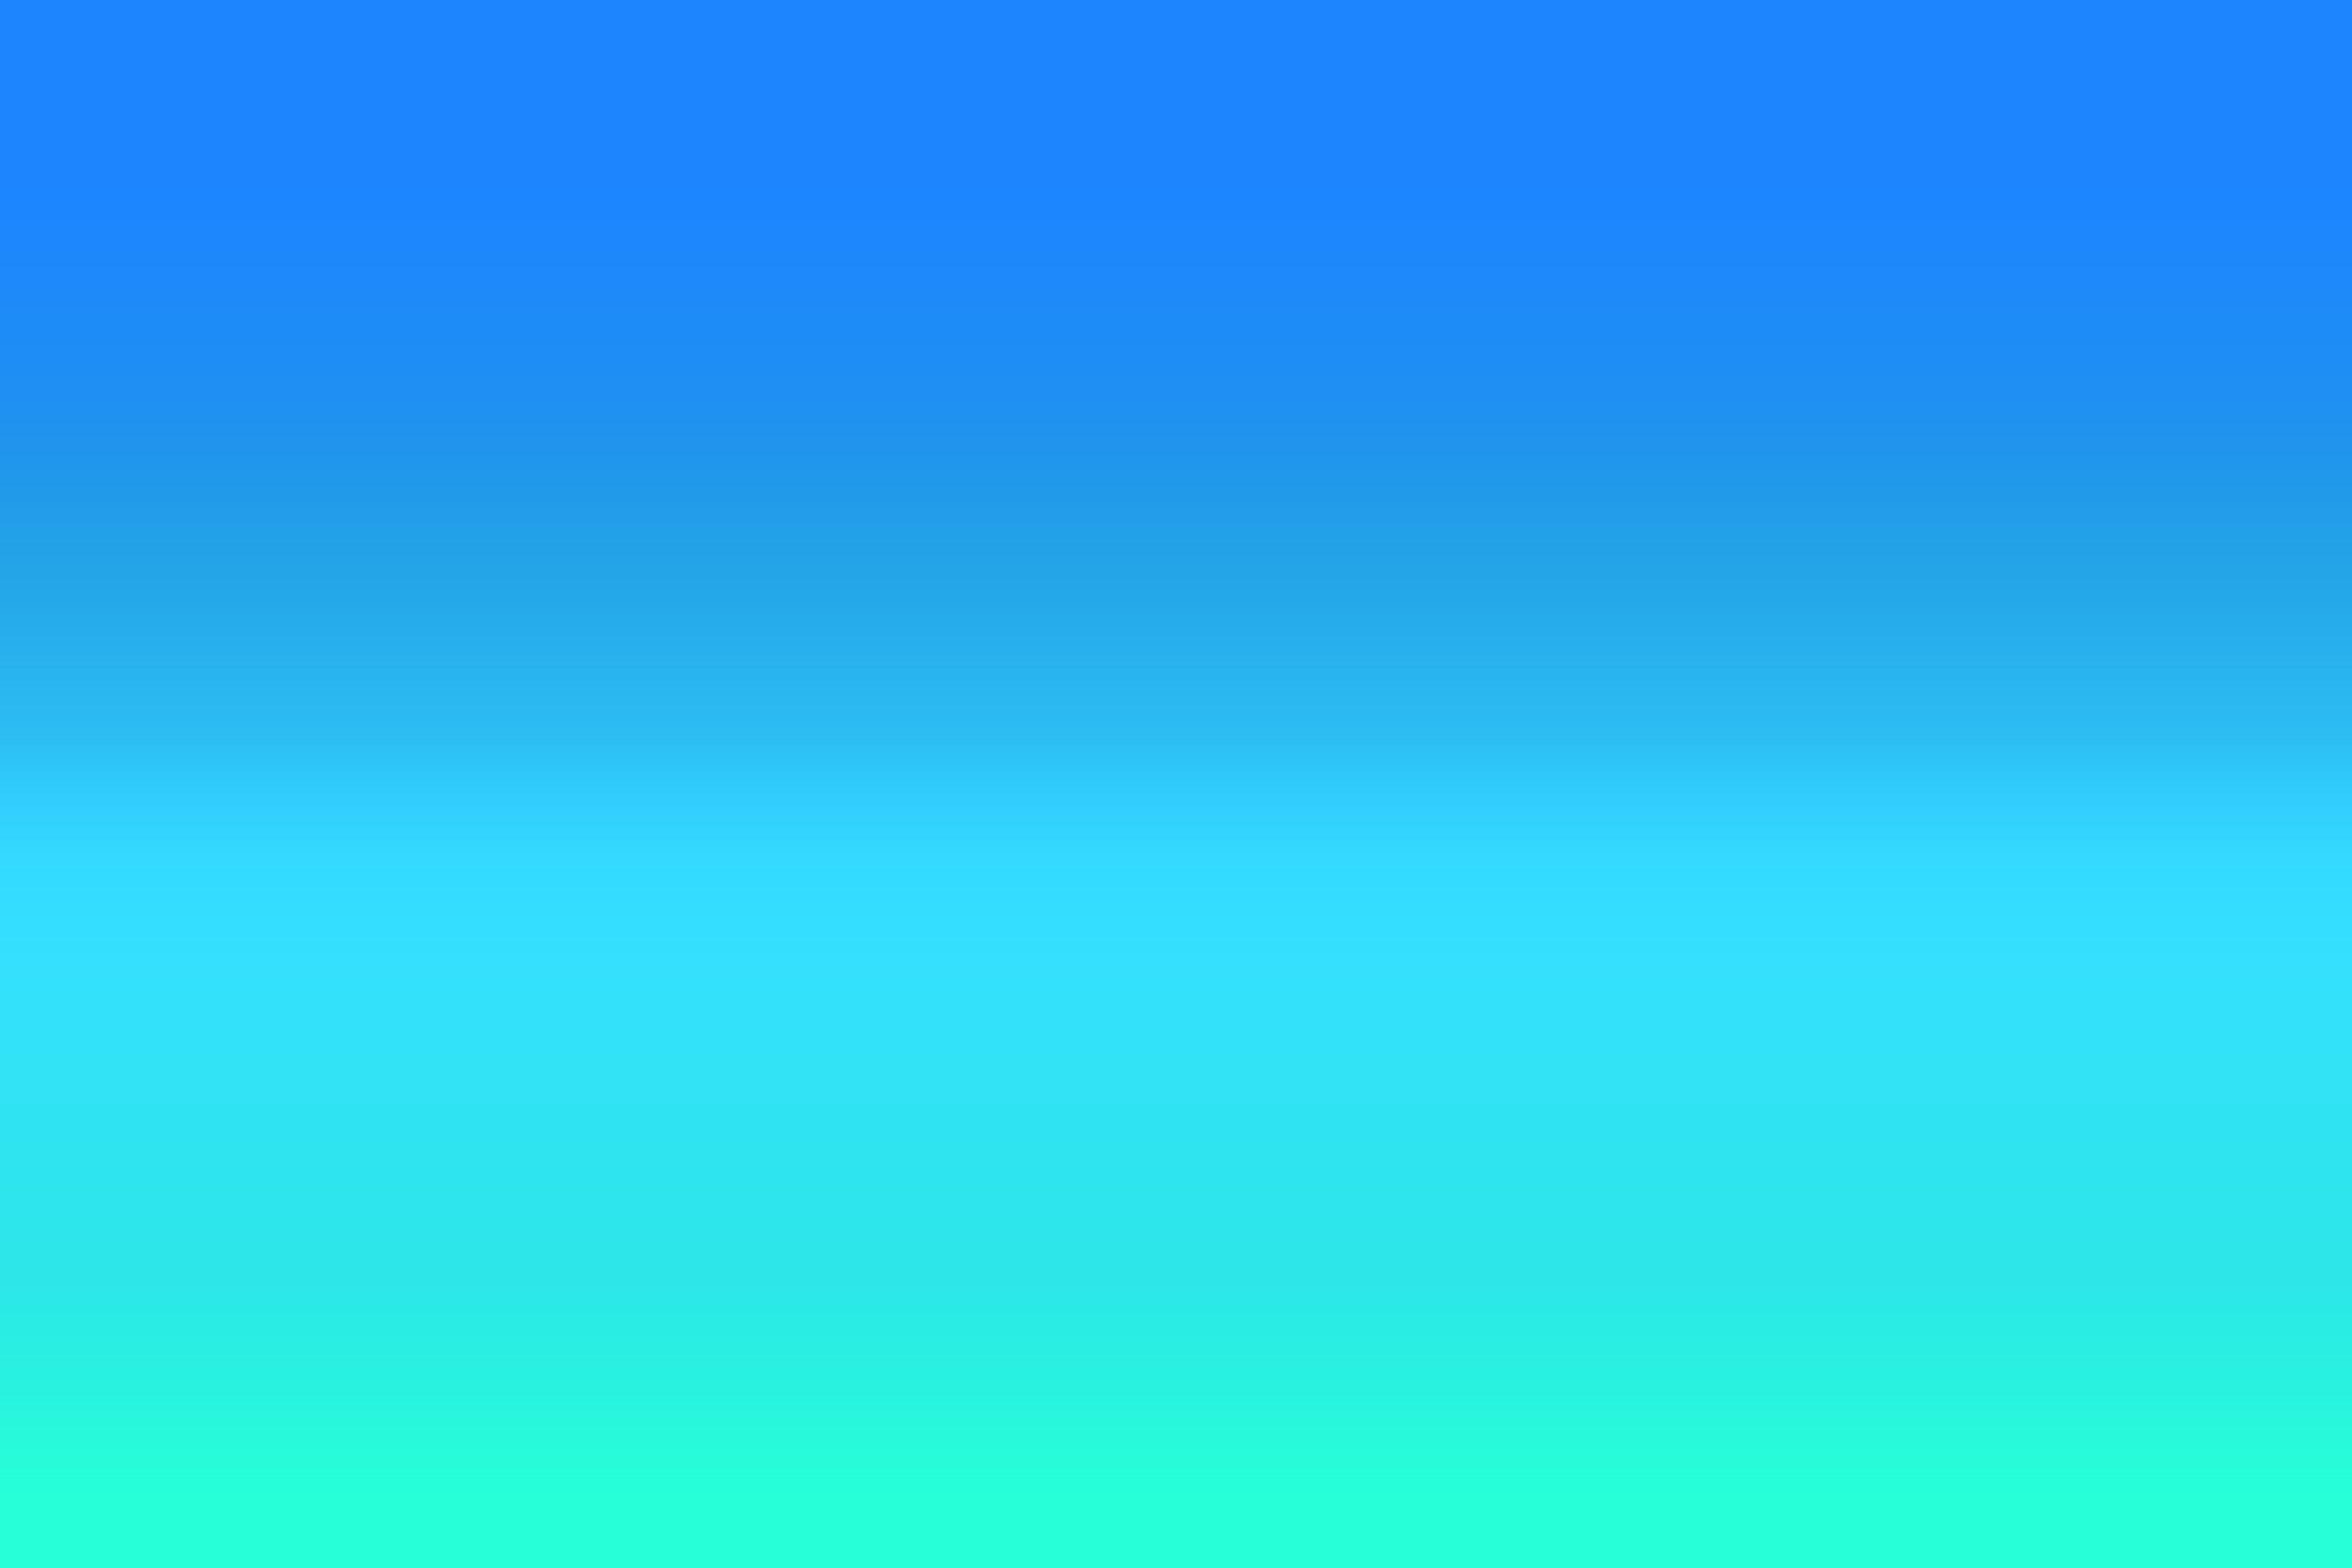 Hình nền Green and Blue Ombre được ví như cảnh vật của một bãi biển Maya ăn khách với những tuyệt tác đổi màu xanh từ nhạt đến đậm. Phong cách trẻ trung, sáng tạo của định dạng ảnh này sẽ giúp bạn truyền tải tốt tinh thần năng động, sáng tạo trong công việc, học tập, hoặc giải trí. Hãy xem hình ảnh để tận hưởng sự tươi trẻ và sáng tạo của Green and Blue Ombre Wallpapers.